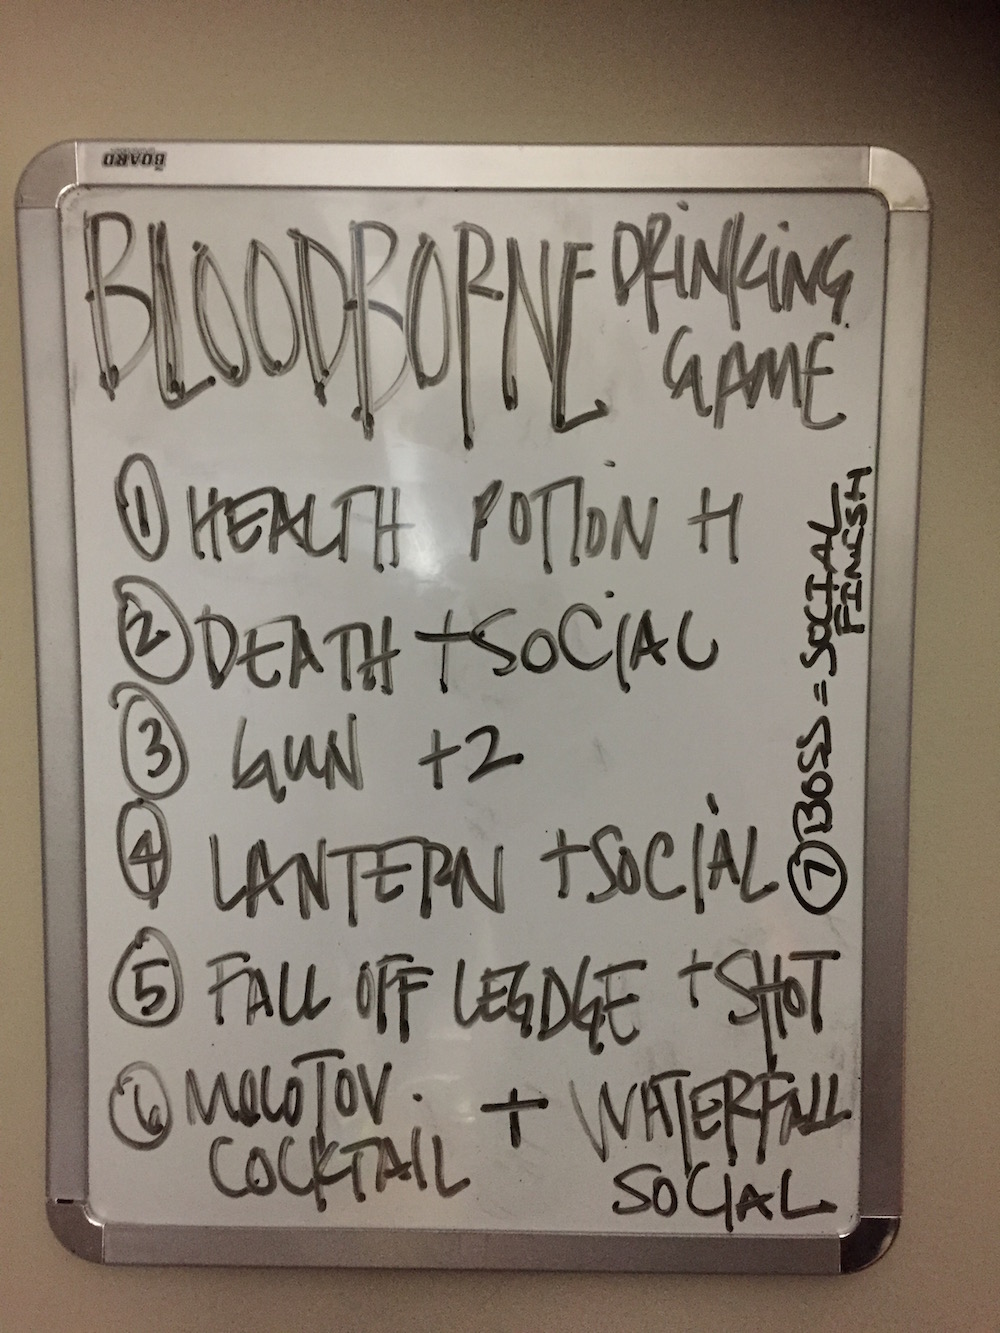 A Bloodborne Drinking Game